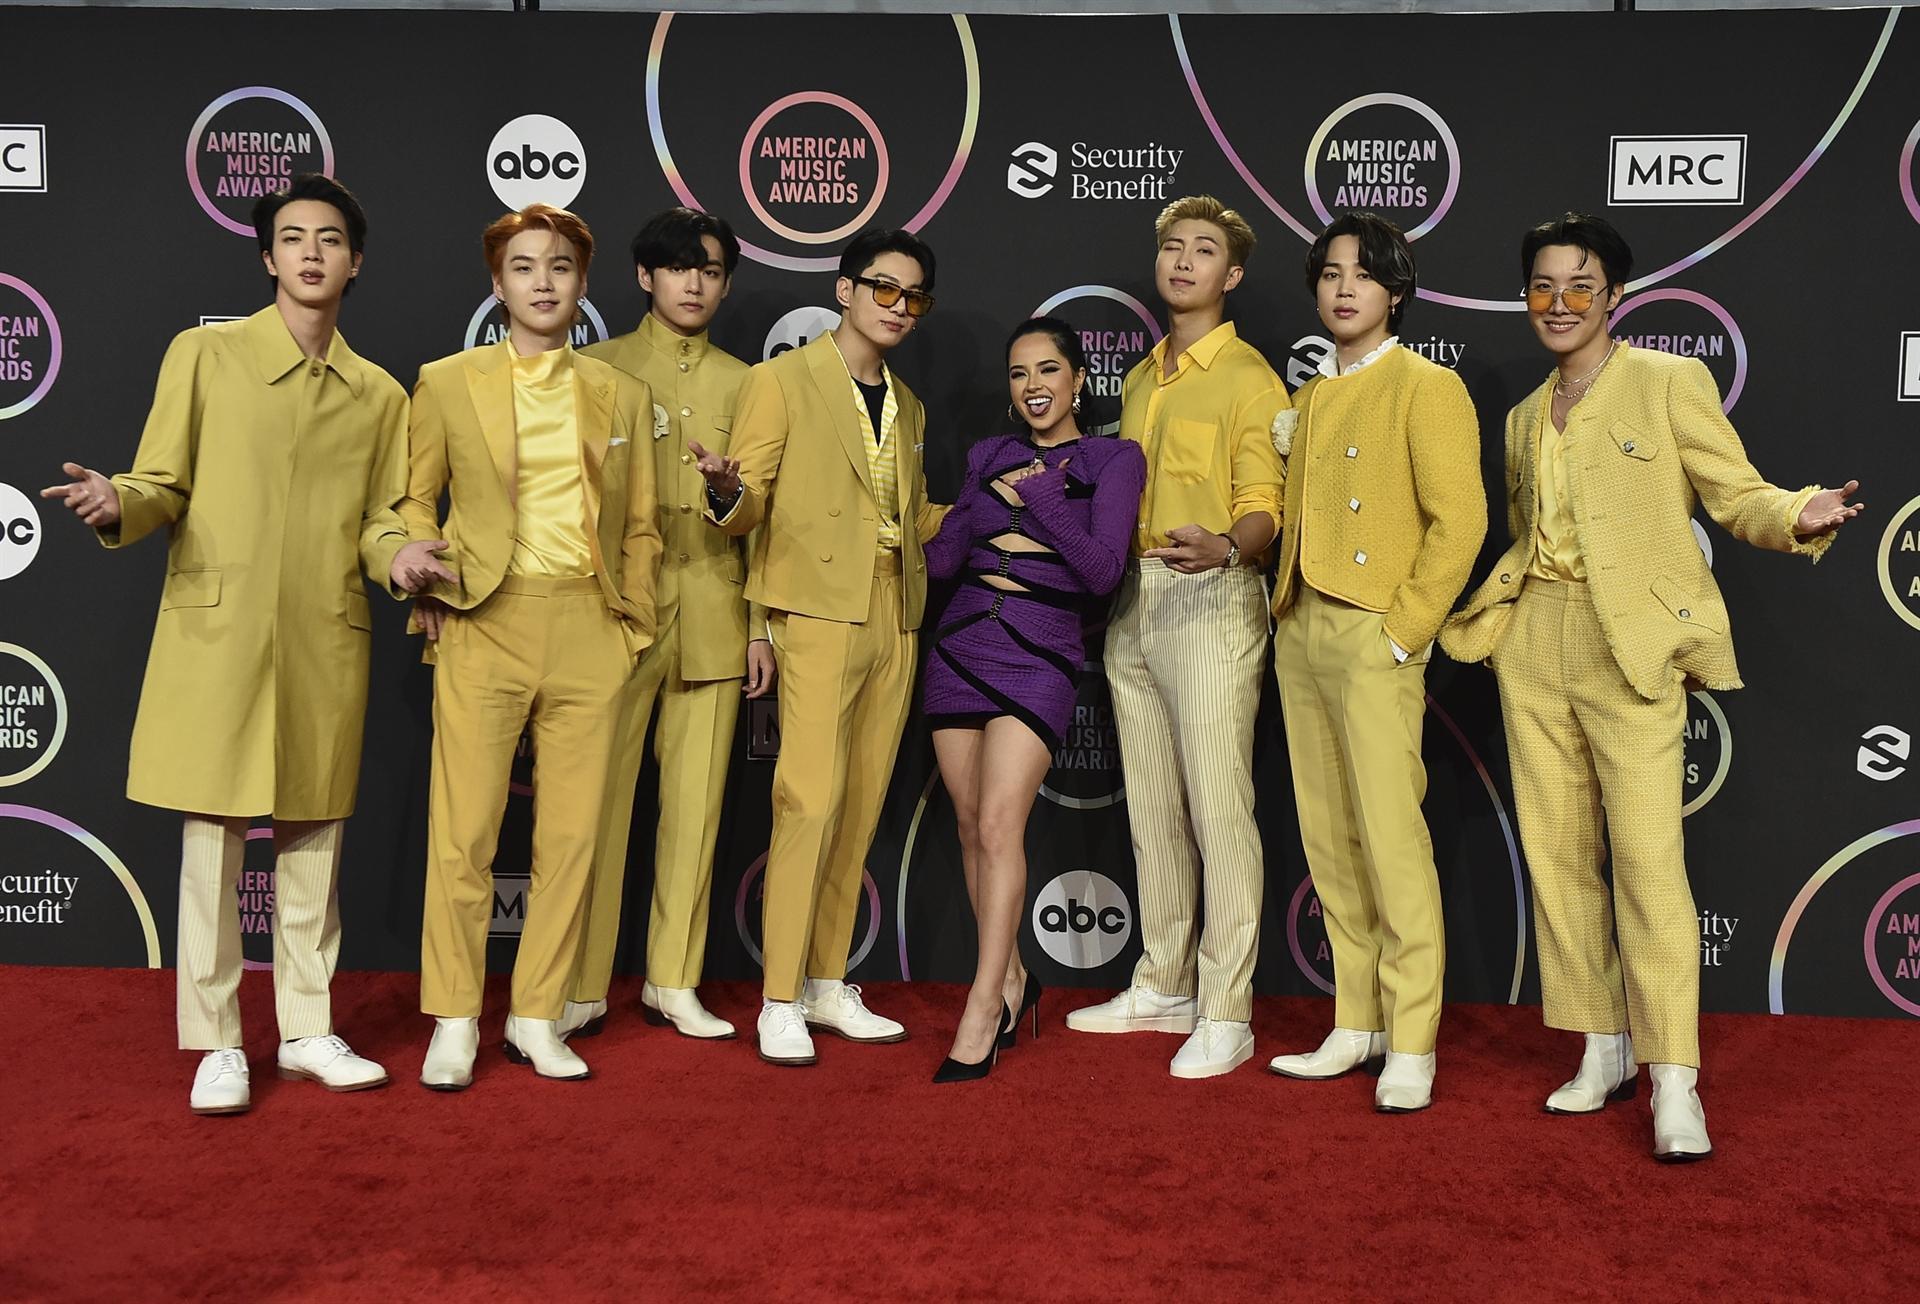 BTS' Billboard Music Awards Debut: A Timeline of K-Pop on American TV